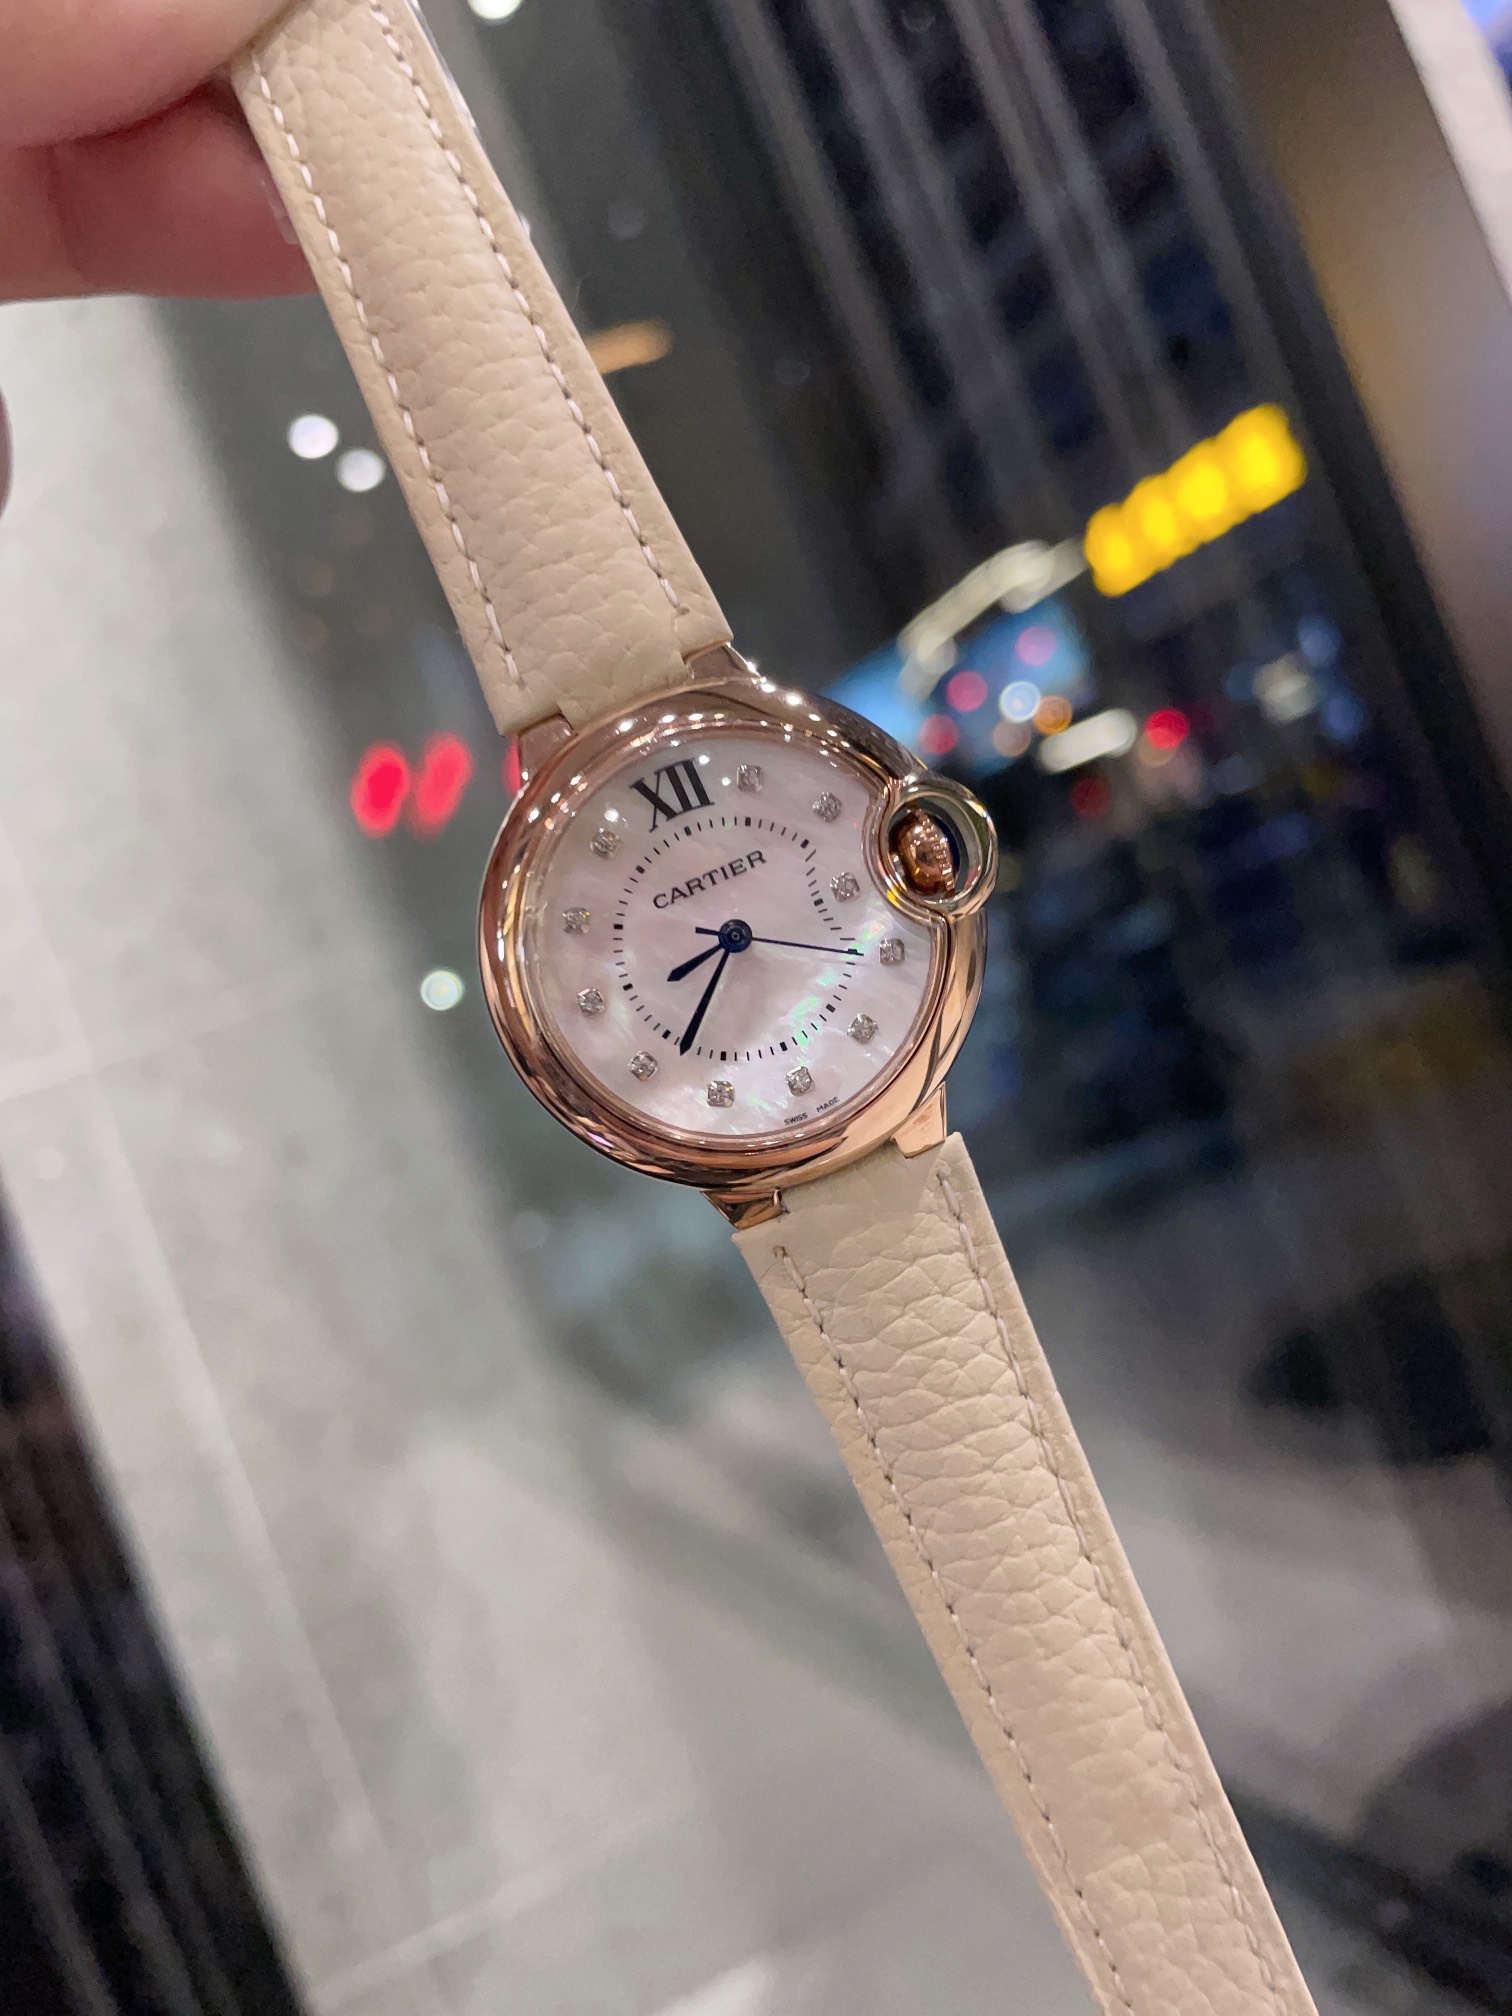 CARTIERカルティエ 腕時計 ムーブメントスーパーコピー フランス 薄い レ 腕時計 スチールバンド レザー ホワイト_1